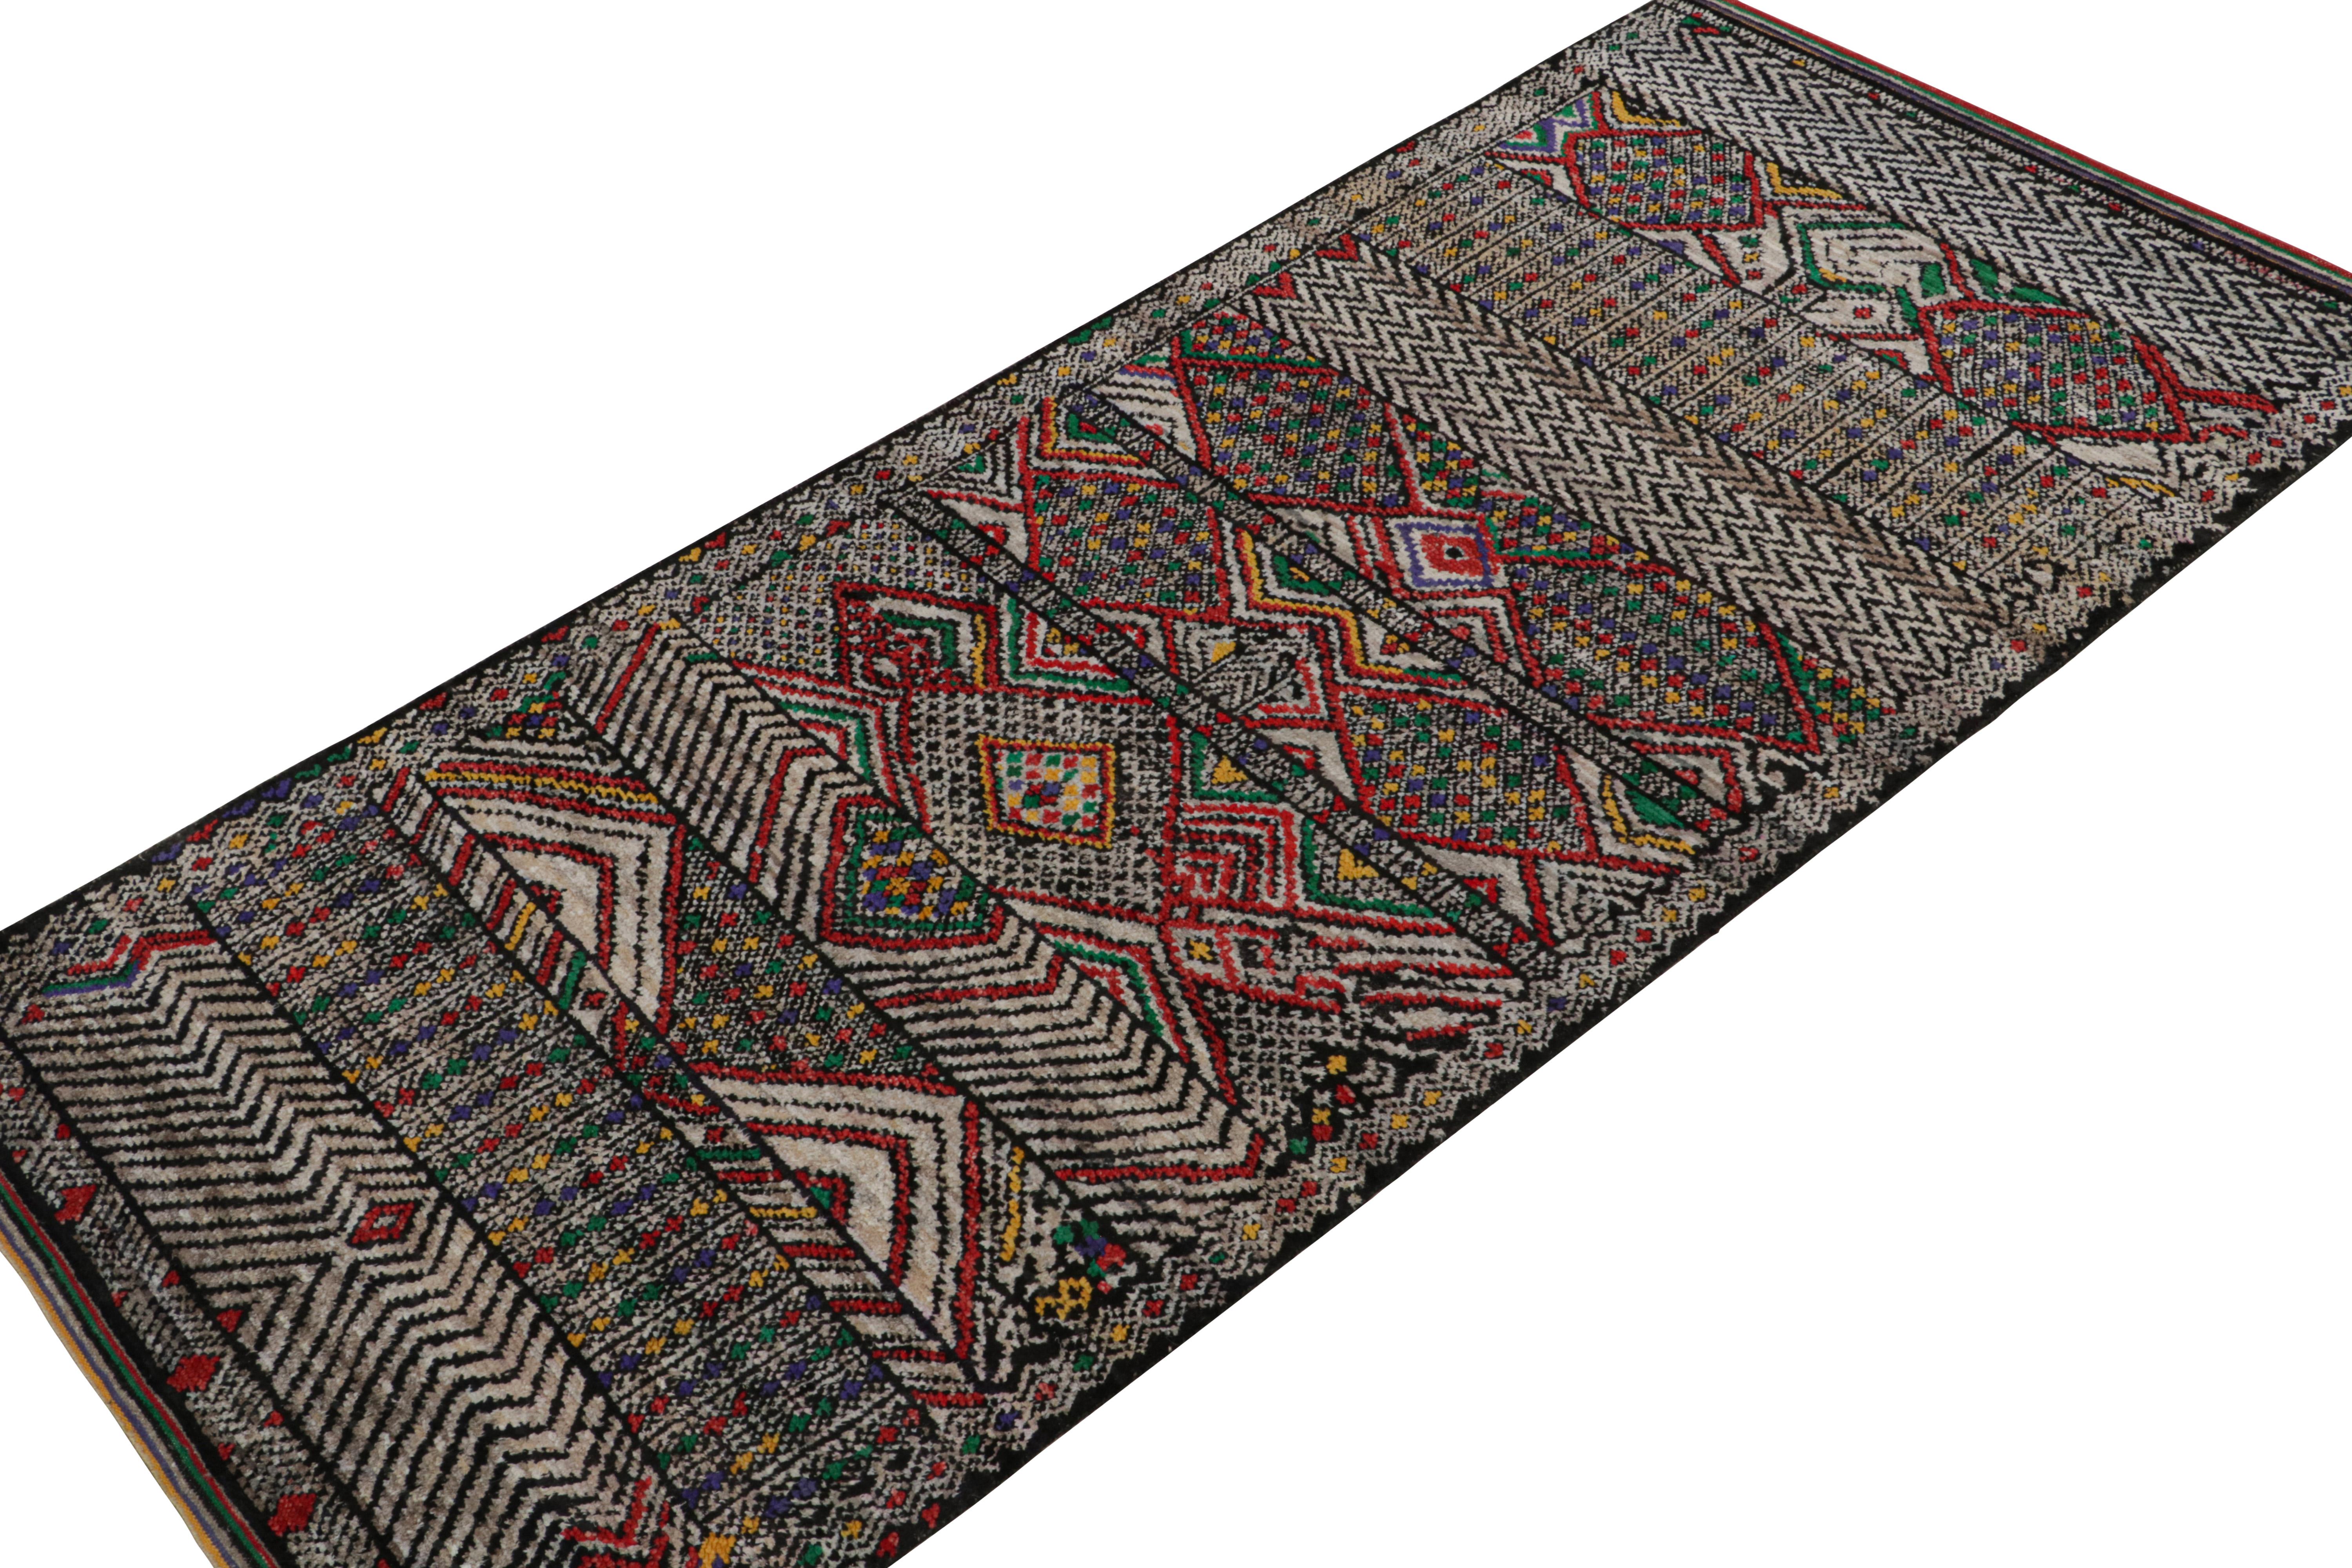 Noué à la main en laine, soie et coton, ce tapis 5x12 est un nouvel ajout à la Collectional de Rug & Kilim. 

Sur le Design/One

Ce tapis est de style primitiviste avec des motifs en noir, gris, rouge, bleu et vert. Les connaisseurs admireront cette